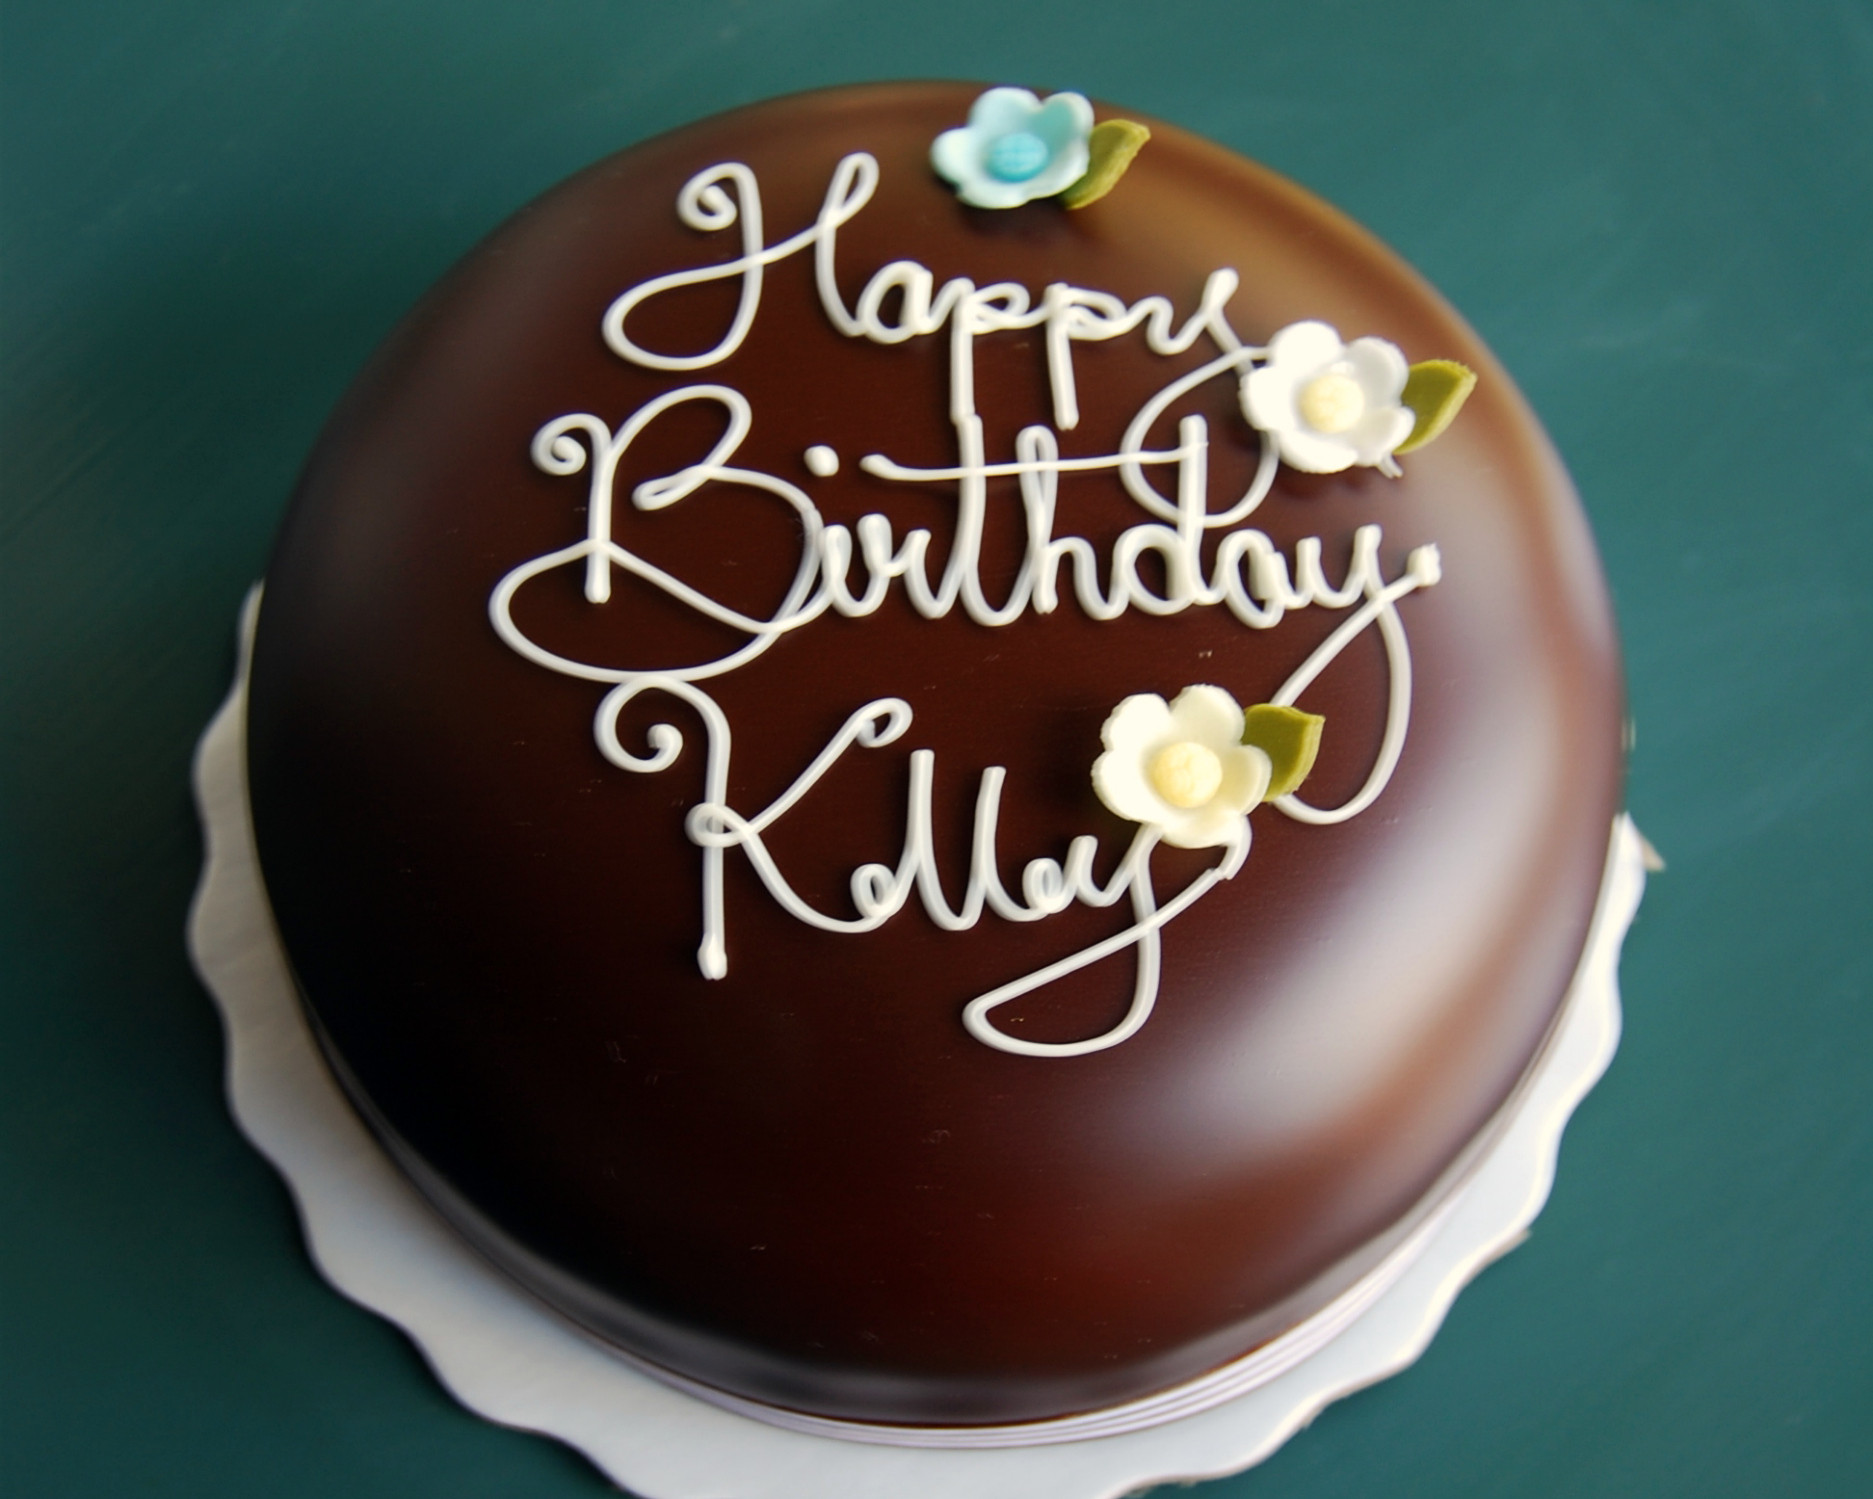 Happy Birthday Kelly Cake
 Happy Birthday Kelly Sunratte